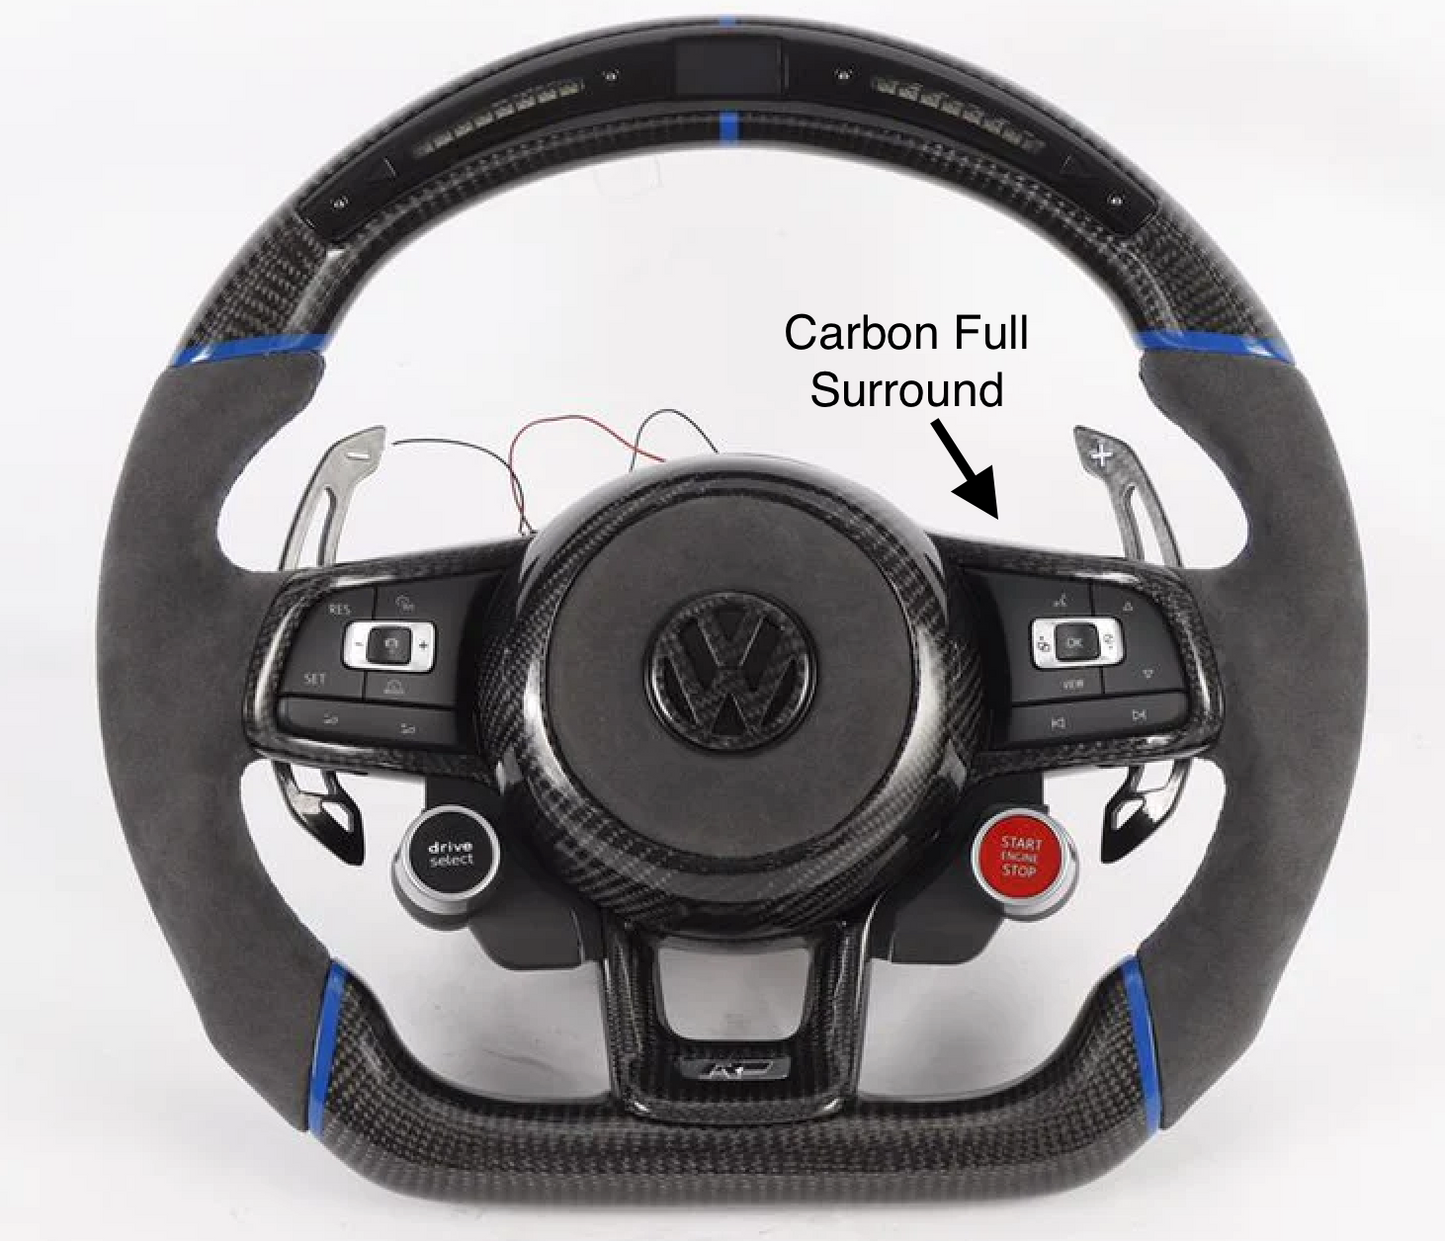 VW Golf R Steering Wheel